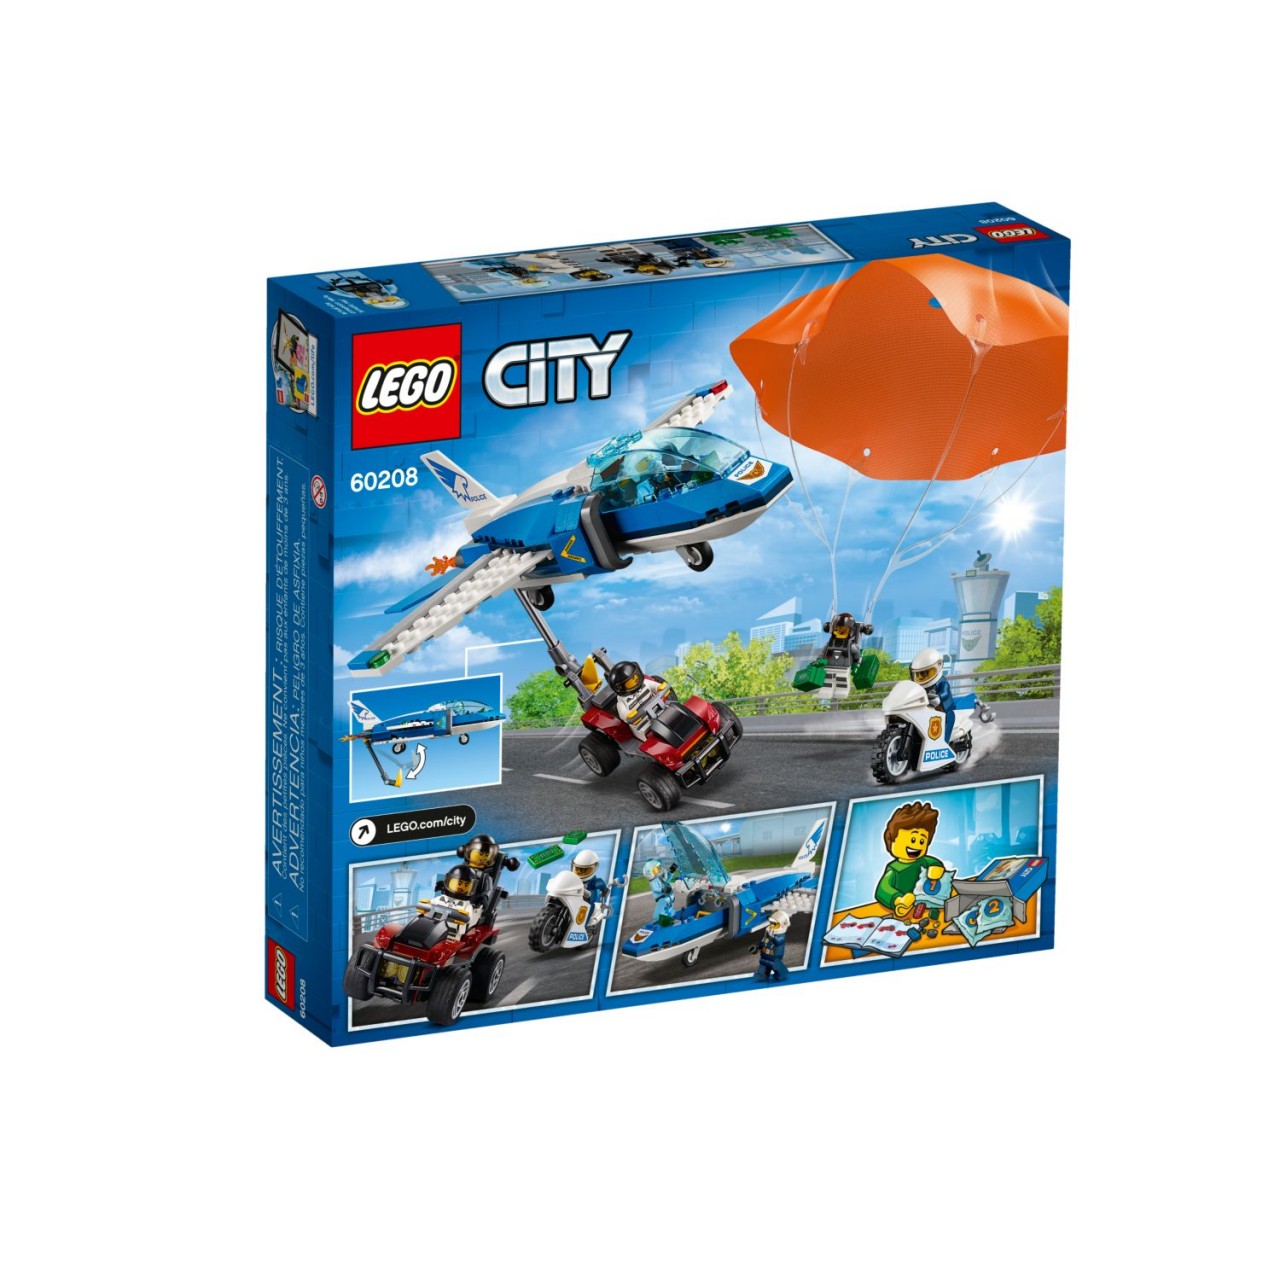 LEGO CITY 60208 Polizei Flucht mit dem Fallschirm